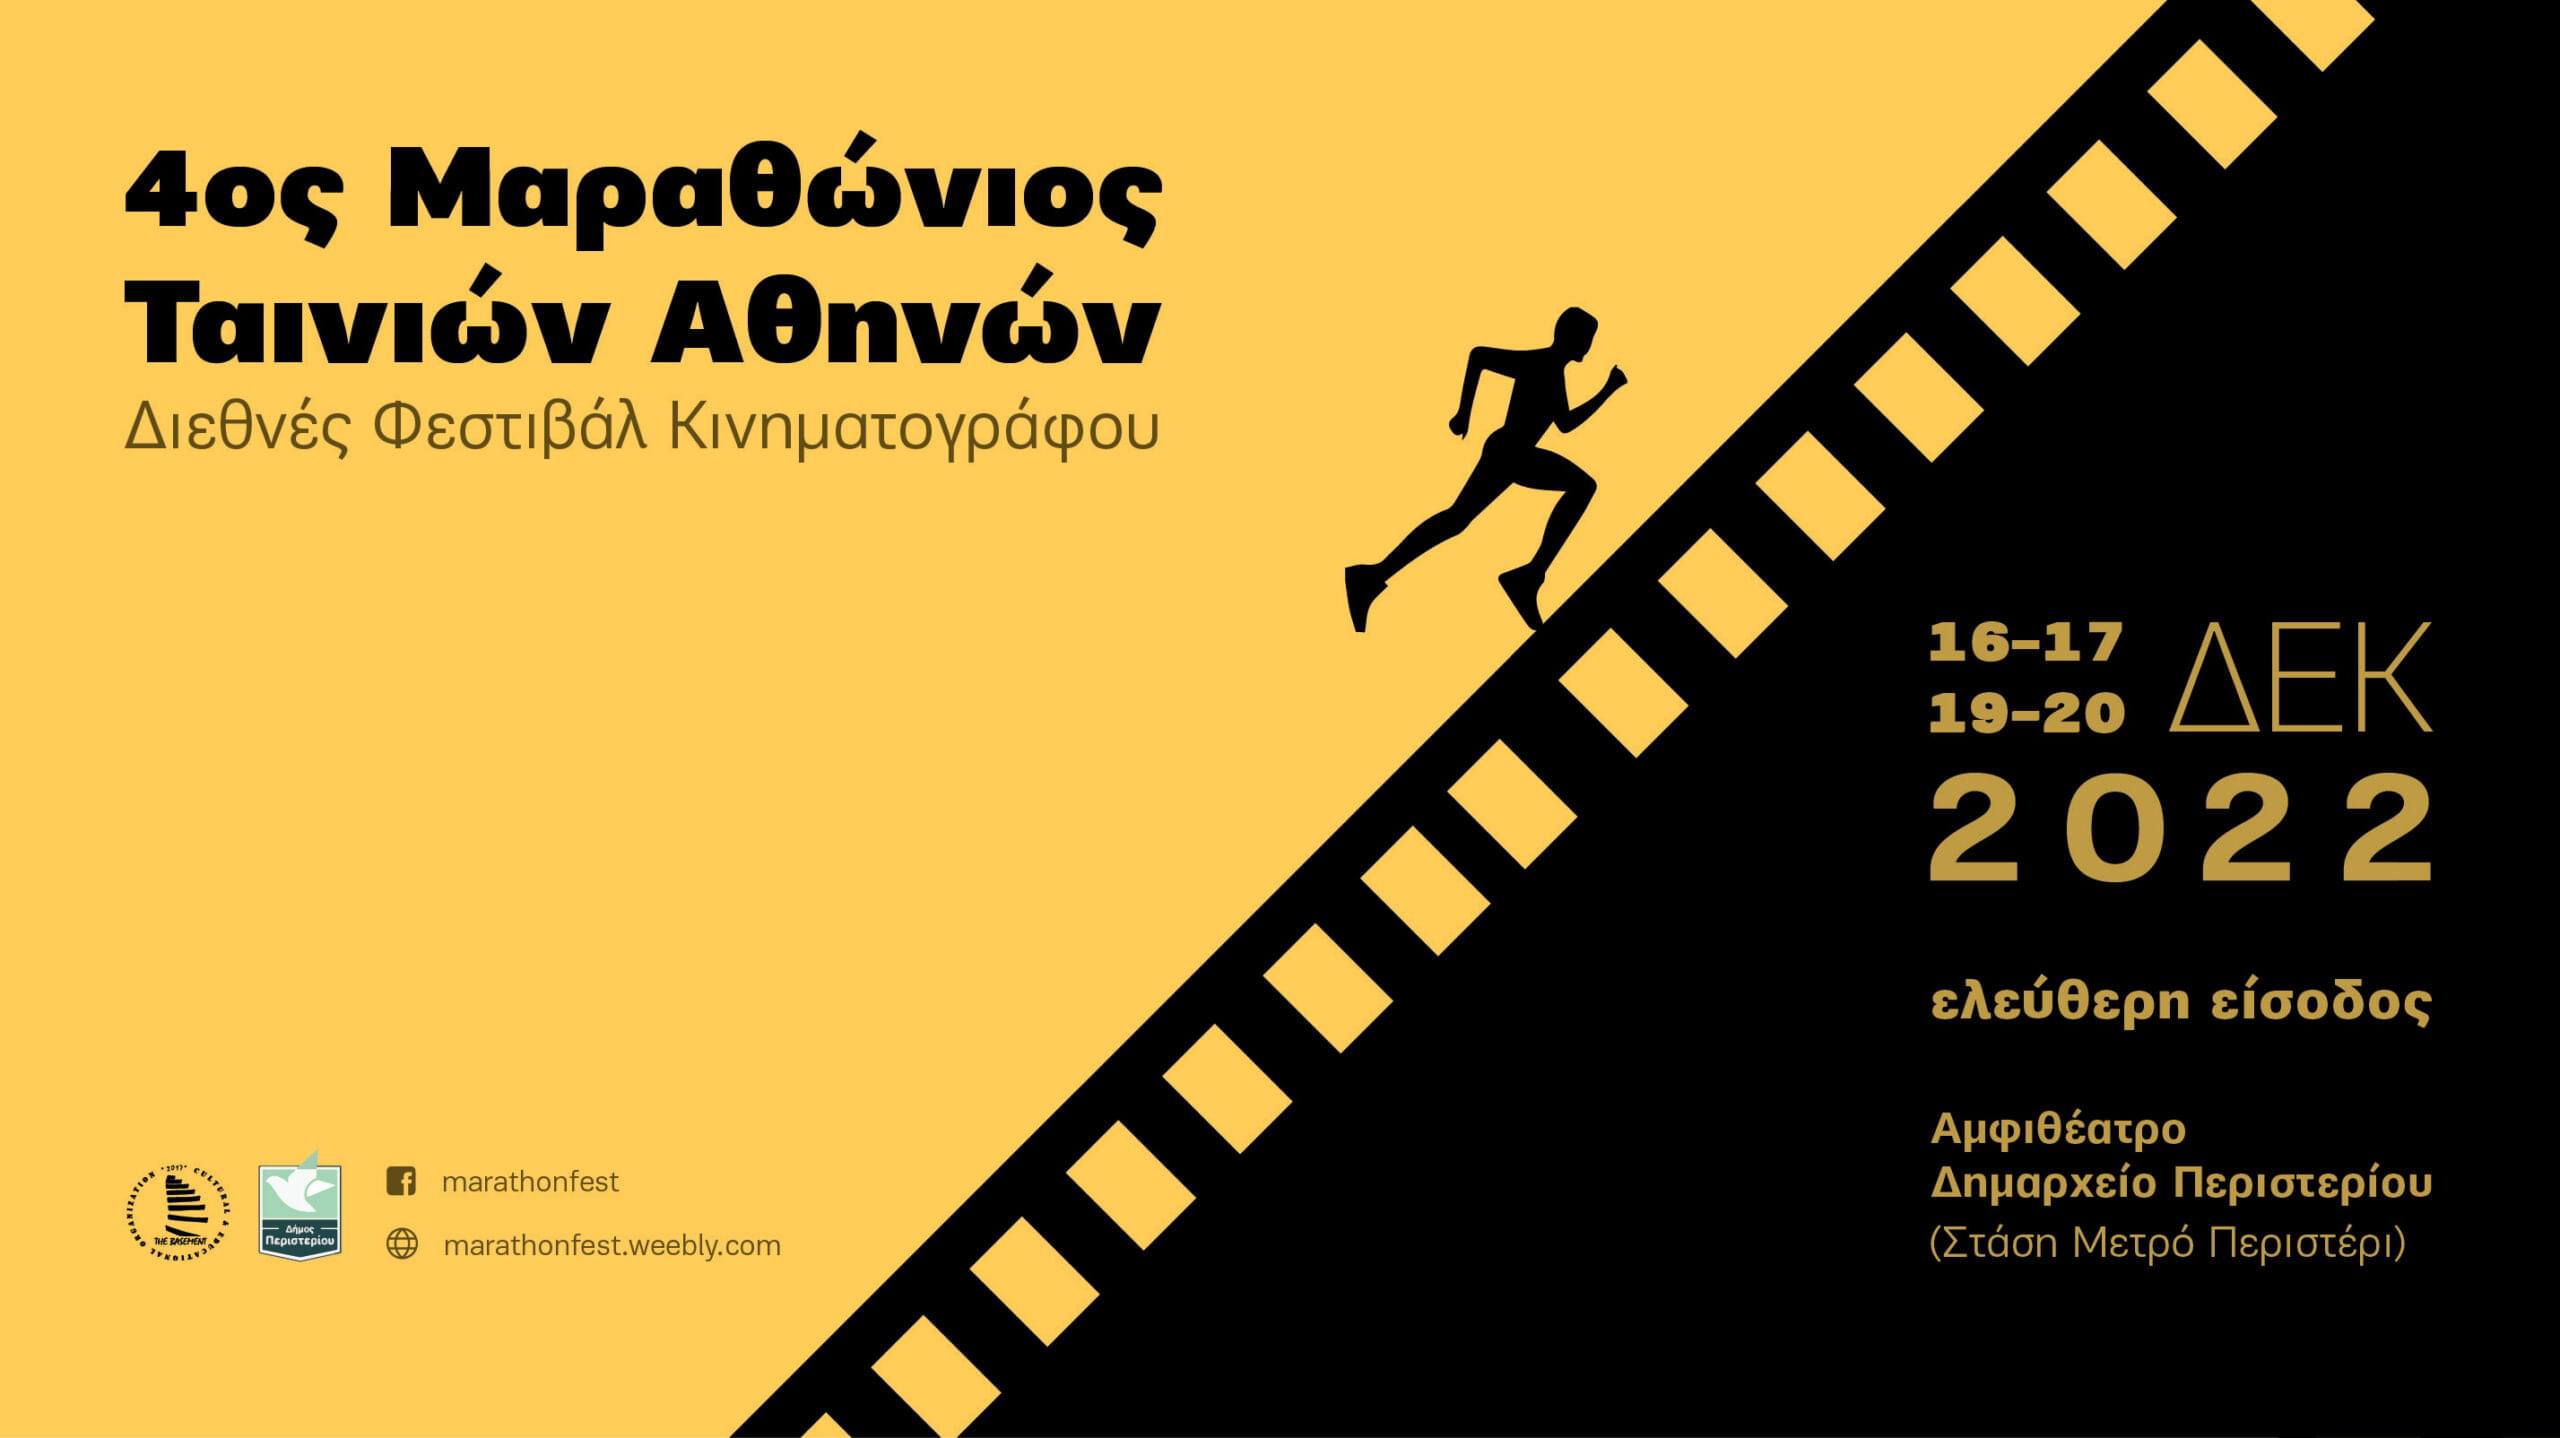 4ο Διεθνές Φεστιβάλ Κινηματογράφου «Μαραθώνιος Ταινιών» στο Περιστέρι με ελεύθερη είσοδο